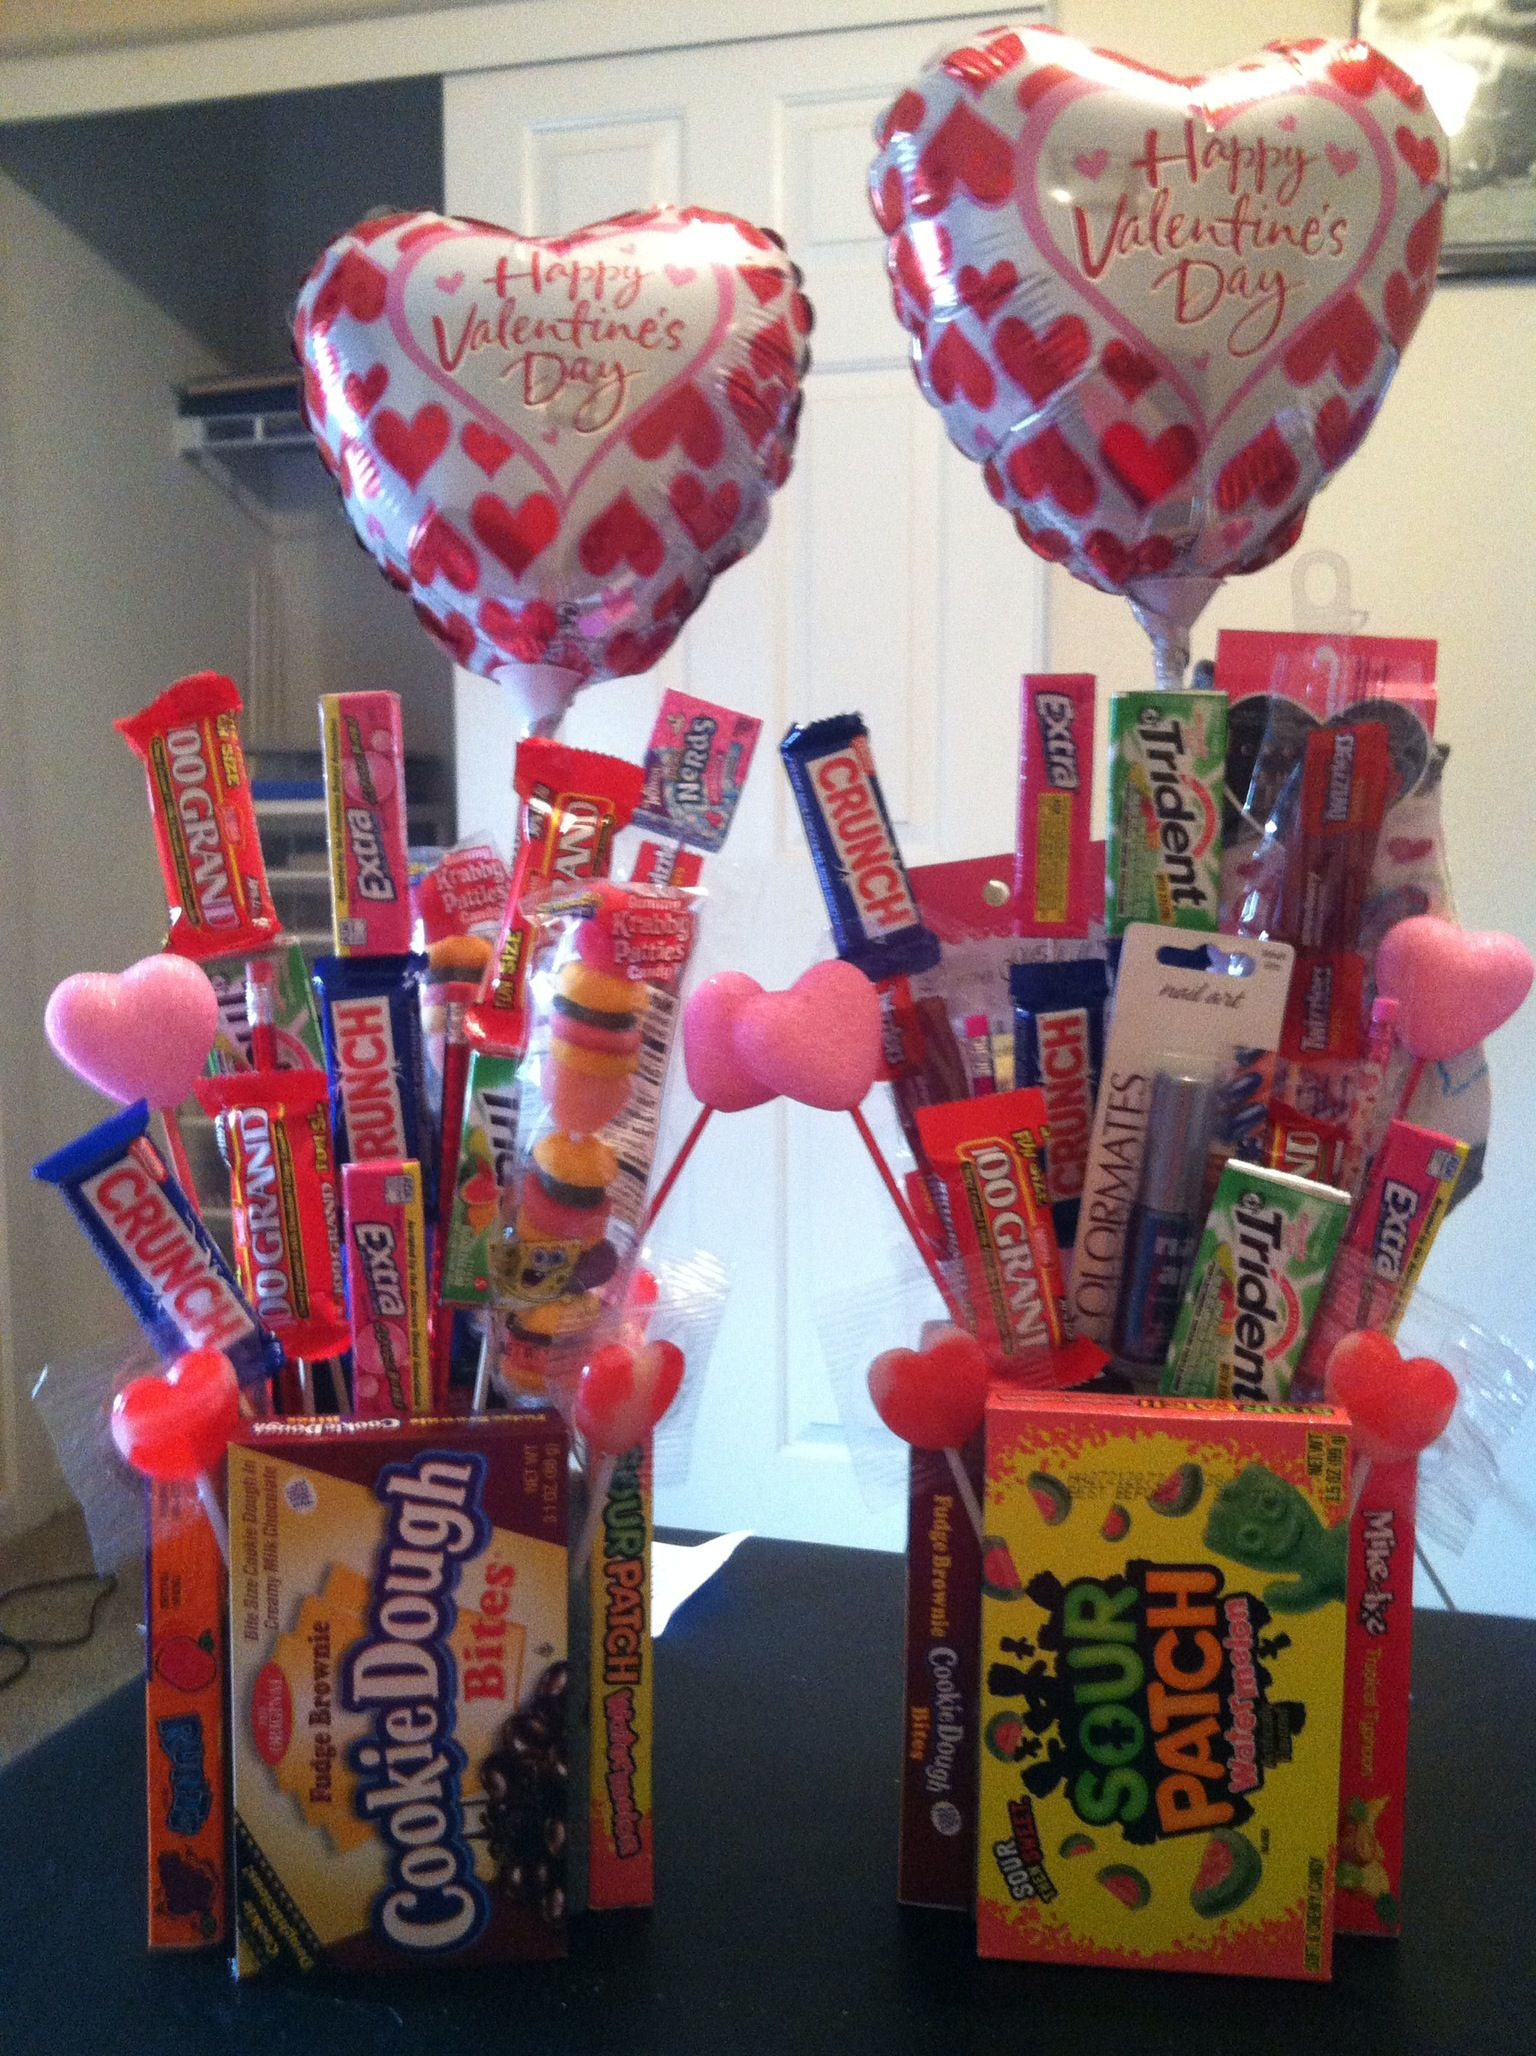 Homemade Valentine Gift Basket Ideas
 Diy Dollar Tree Valentine Gift Ideas Quick And Easy